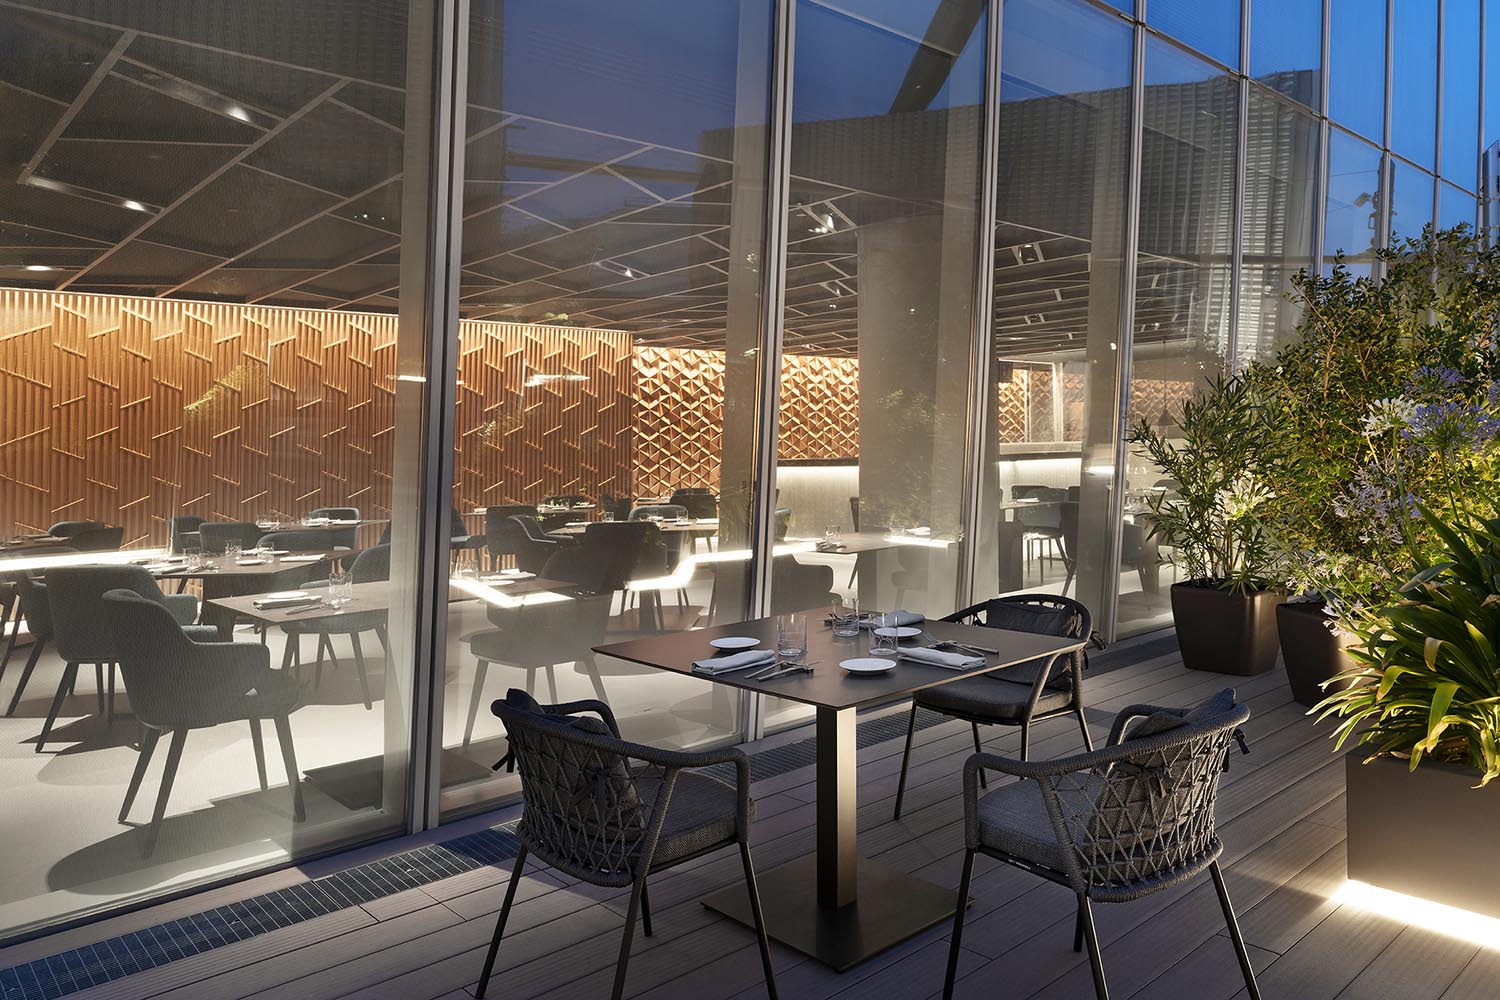 餐厅设计,休闲餐厅设计,餐厅设计案例,Andrea Maffei Architects,意大利,米兰,DAV餐厅,国外餐厅设计,地中海美食